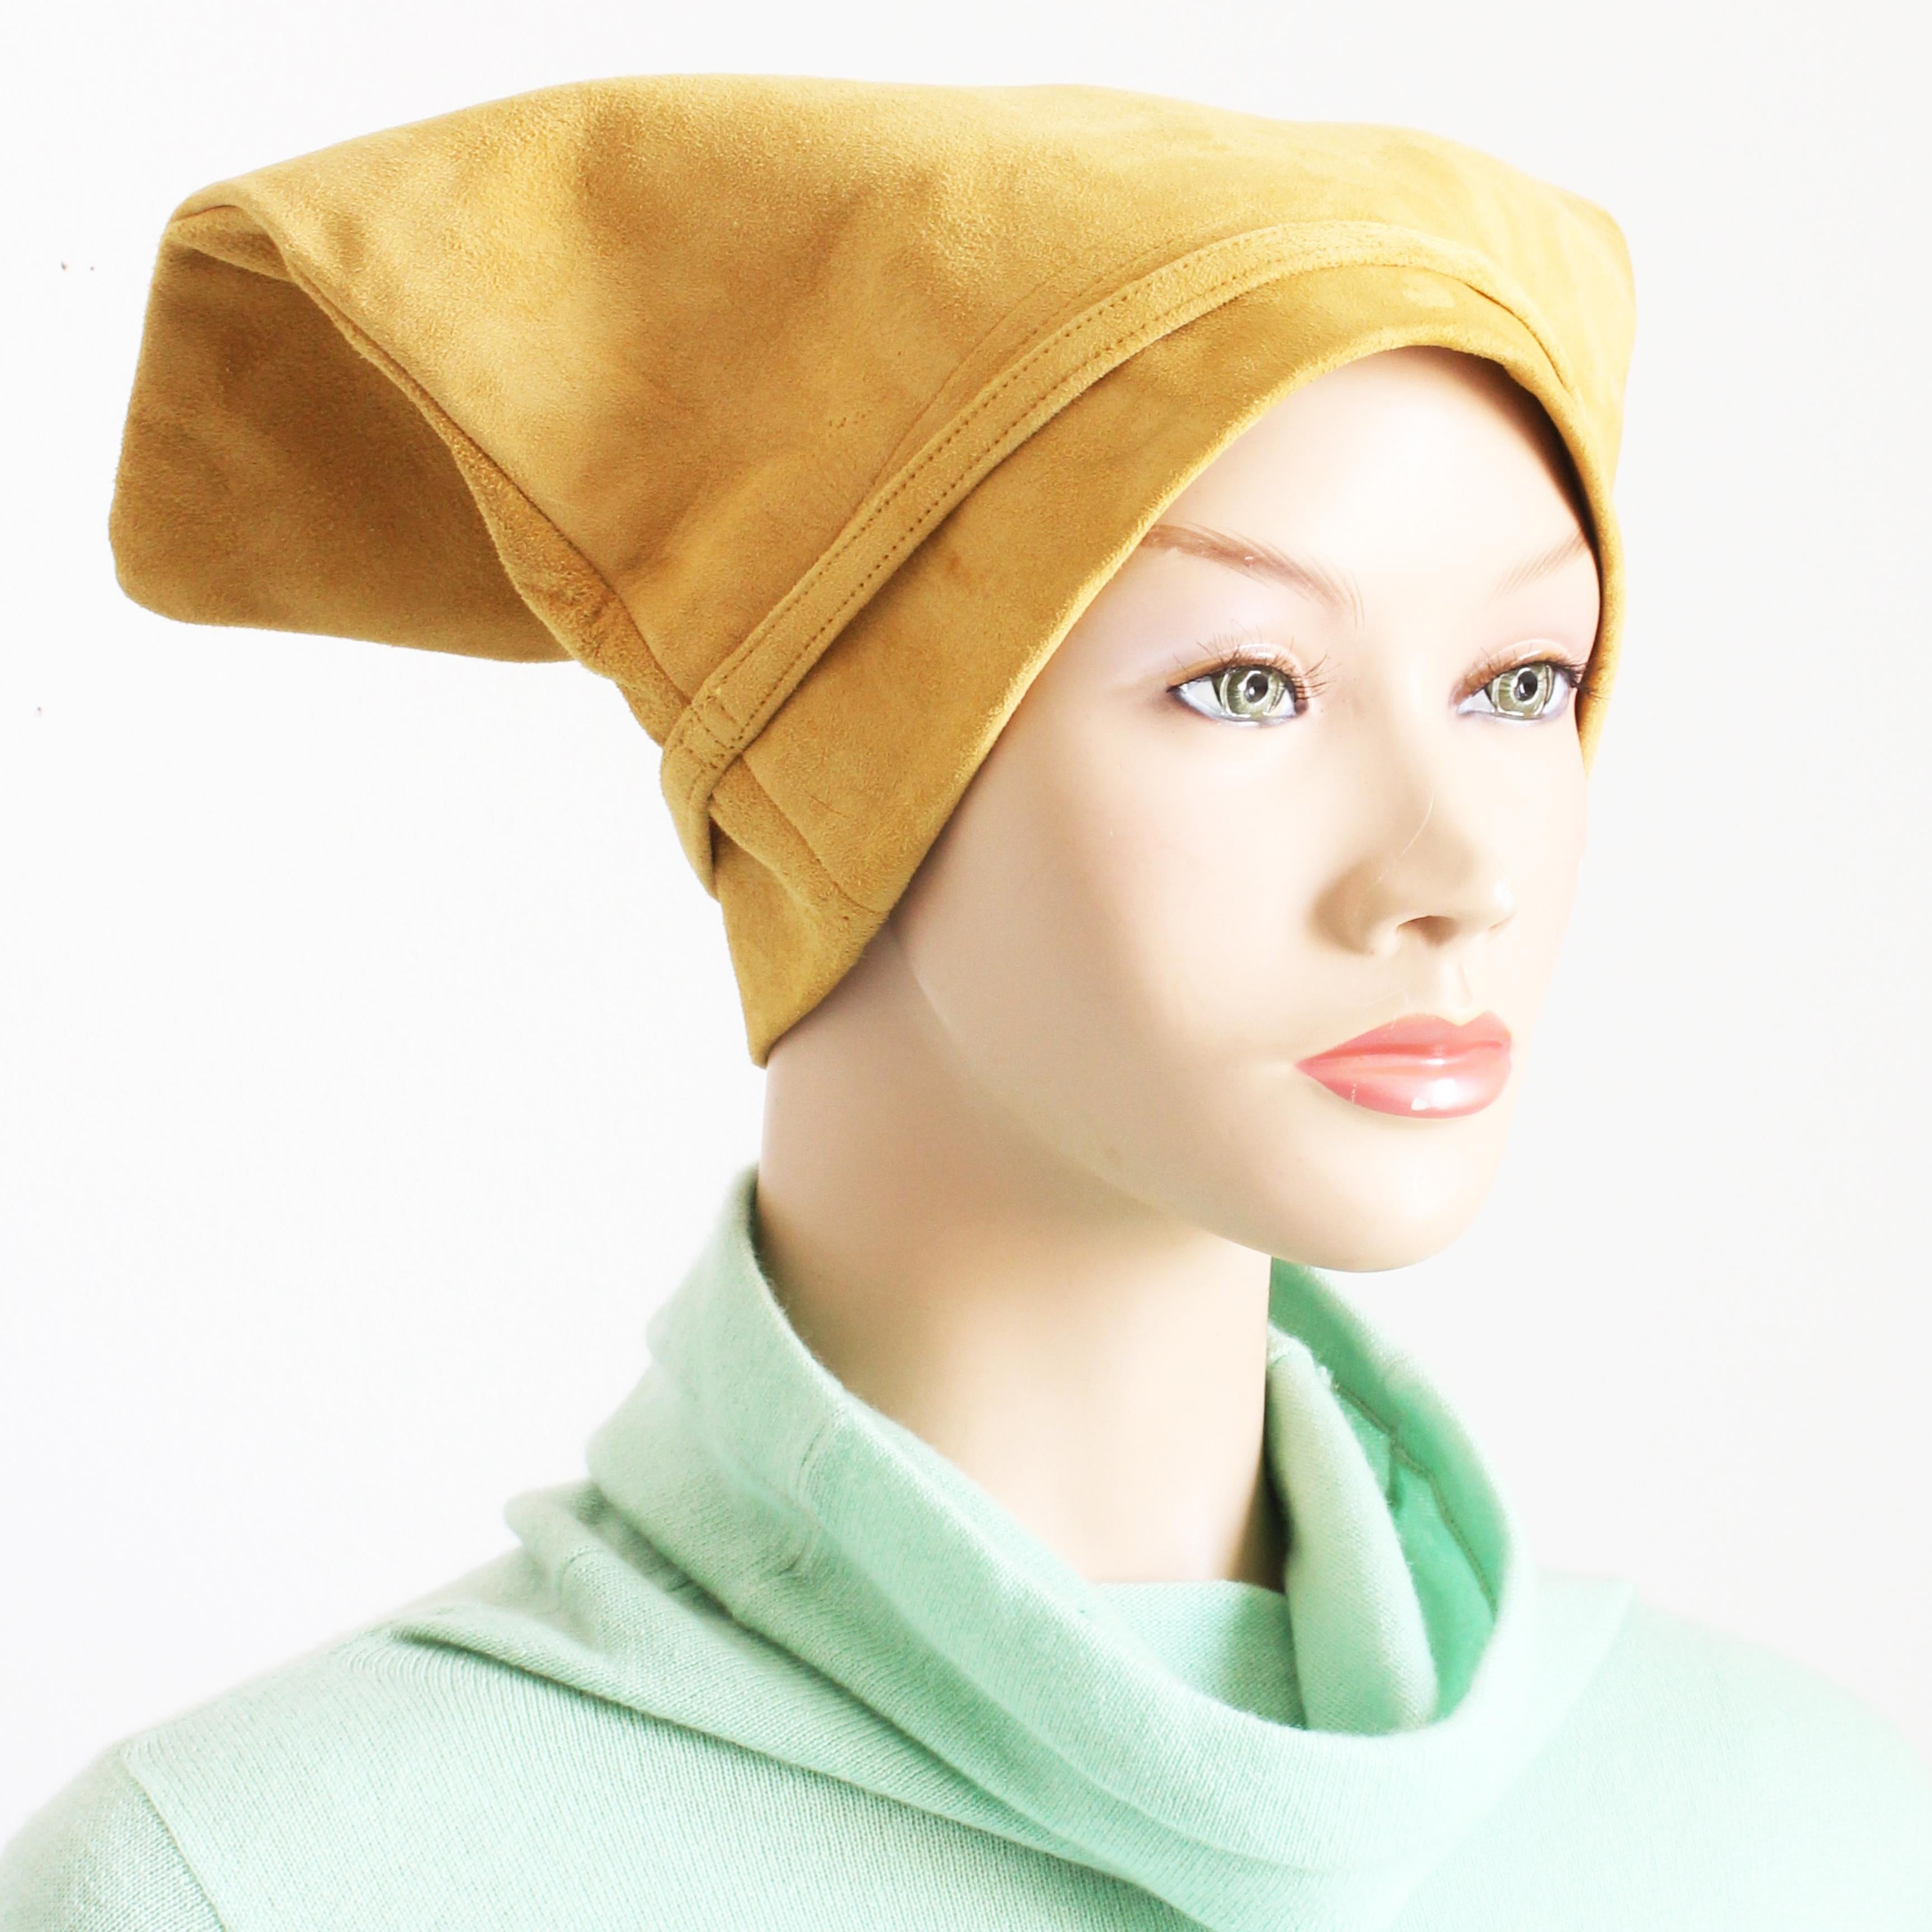 Gebrauchter 'Taschenhut', entworfen von Bonnie Cashin für Sills, höchstwahrscheinlich in den 1960er Jahren.  Sie ist aus geschmeidigem Veloursleder in einem satten, cremefarbenen Farbton gefertigt, hat schmale Cinch-Riemen an den Seiten und ist mit